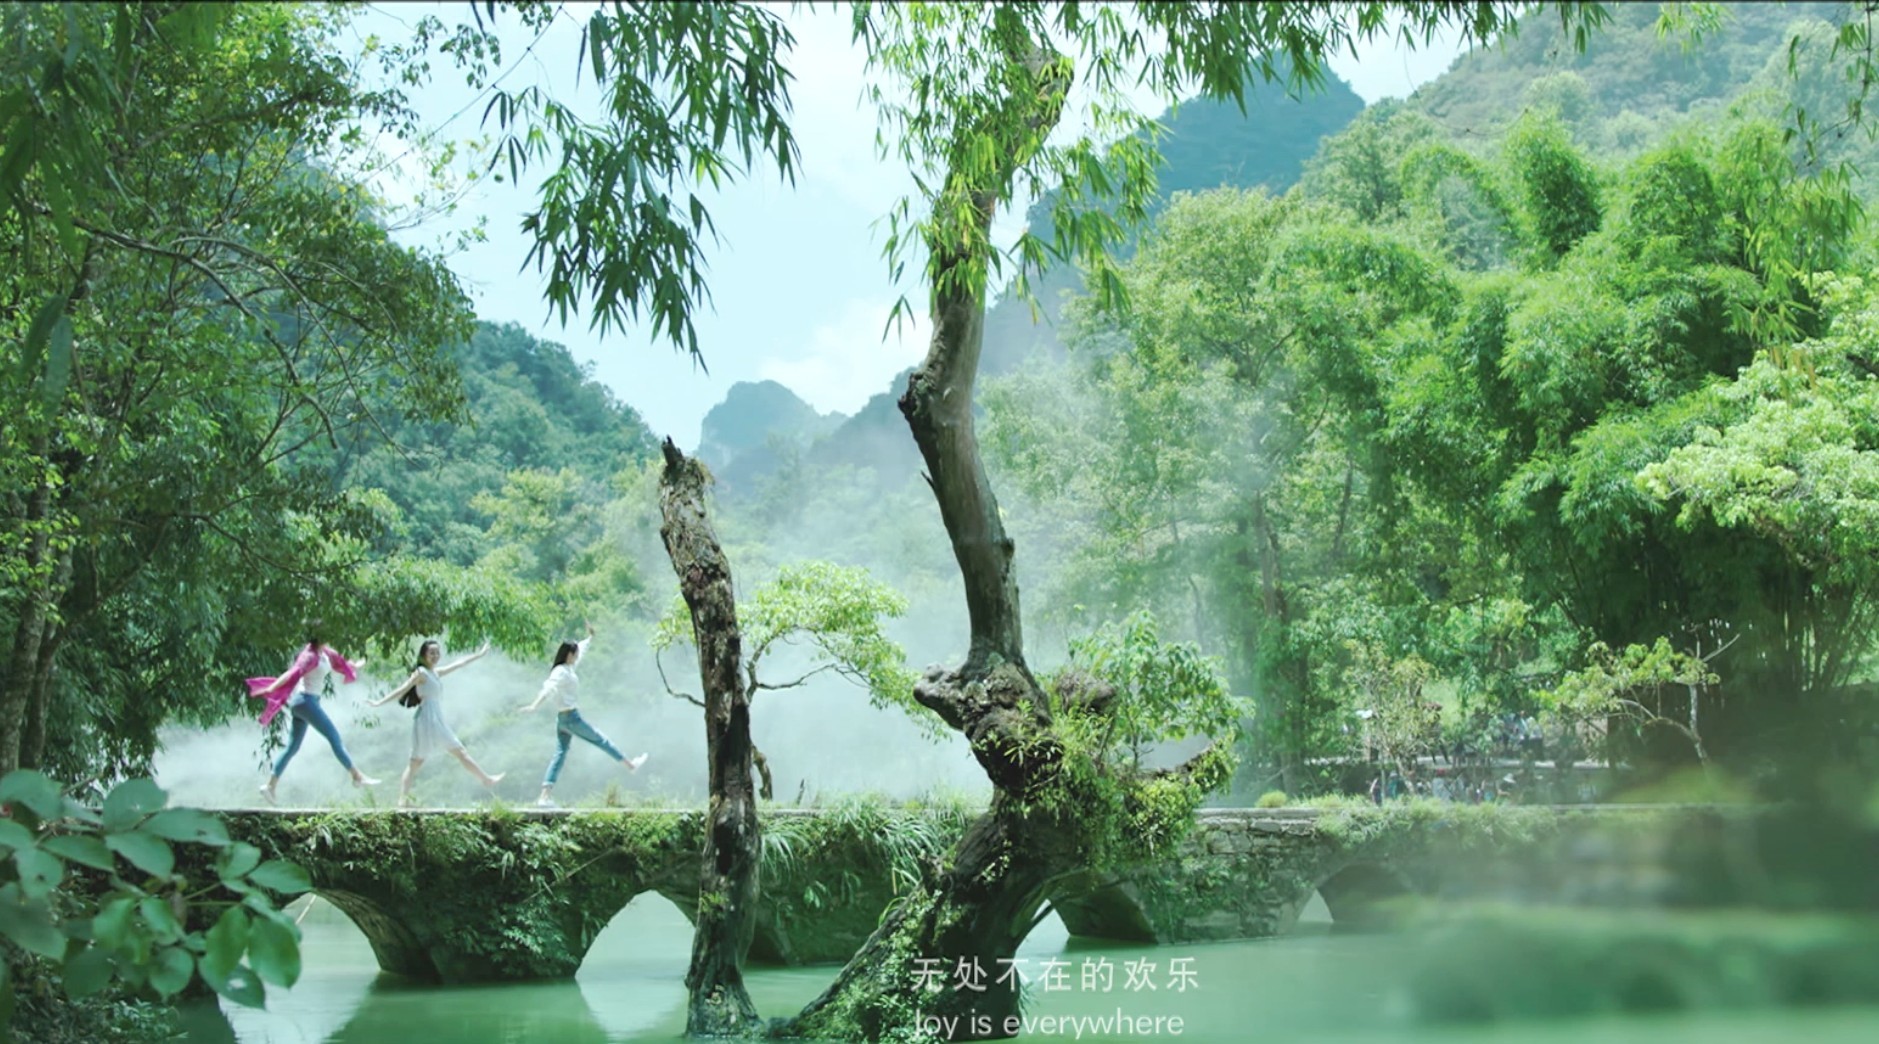 【形象】贵州省旅游宣传片-《我在贵州等你》-90S